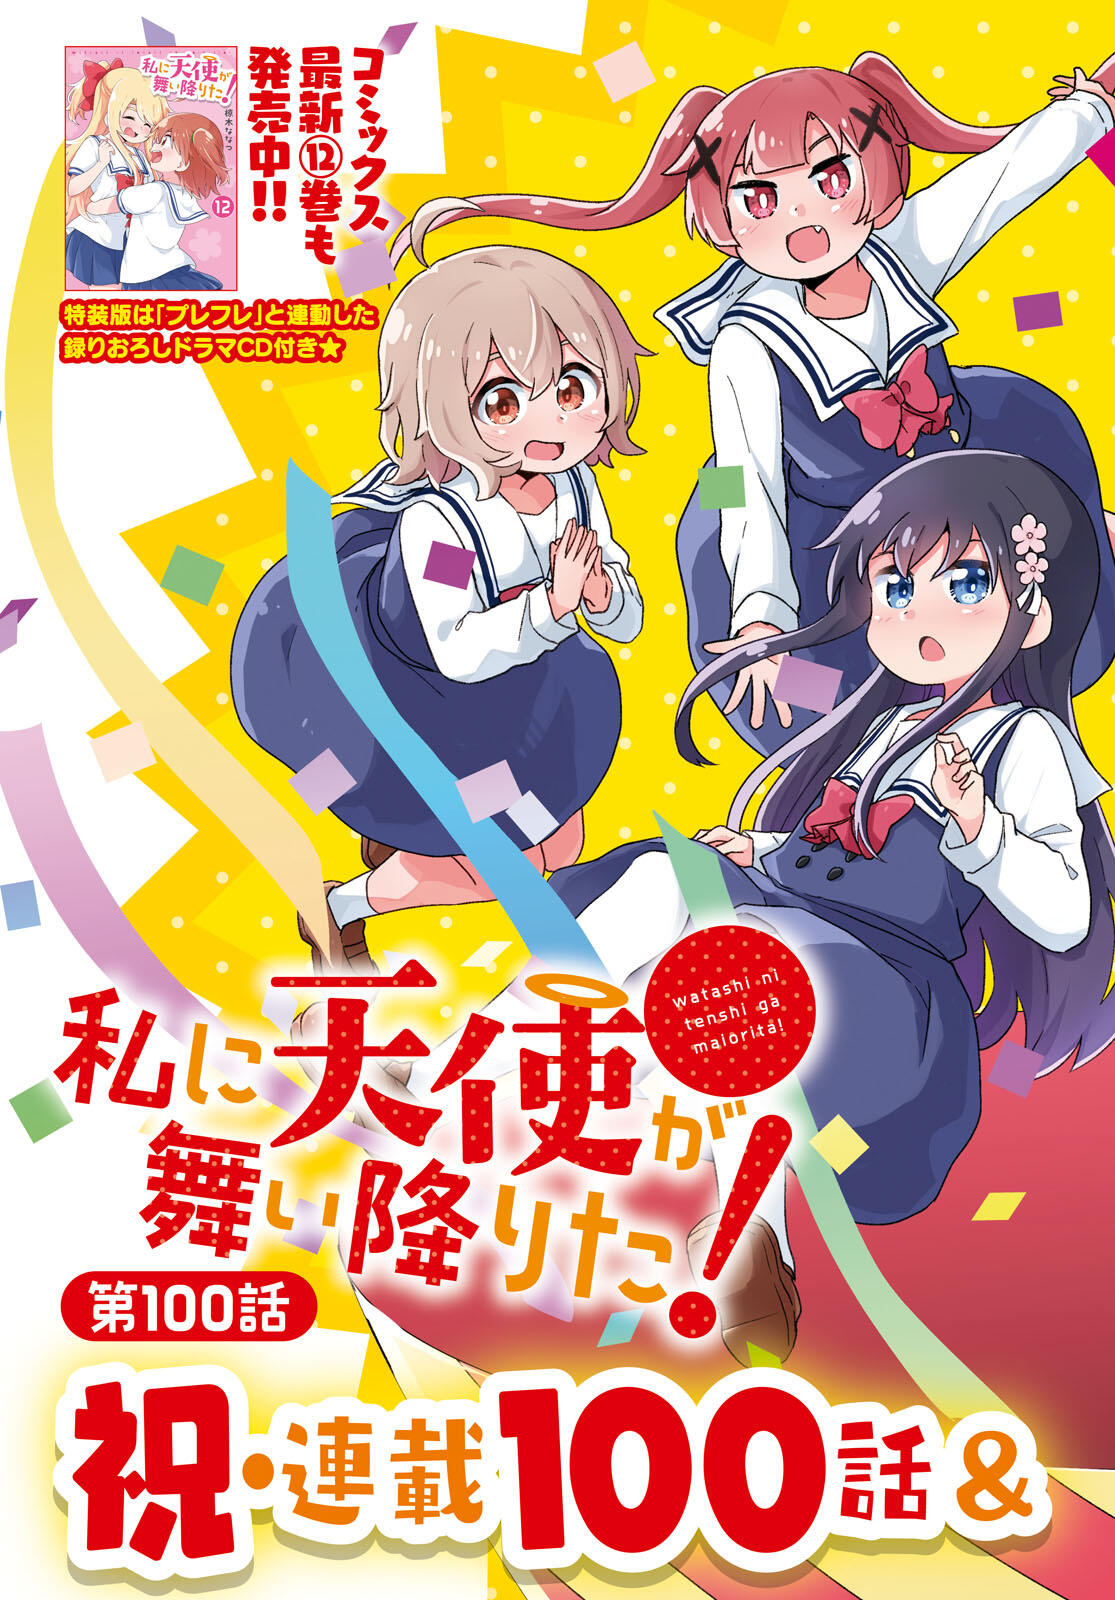 Read Watashi Ni Tenshi Ga Maiorita! Chapter 81 - Manganelo